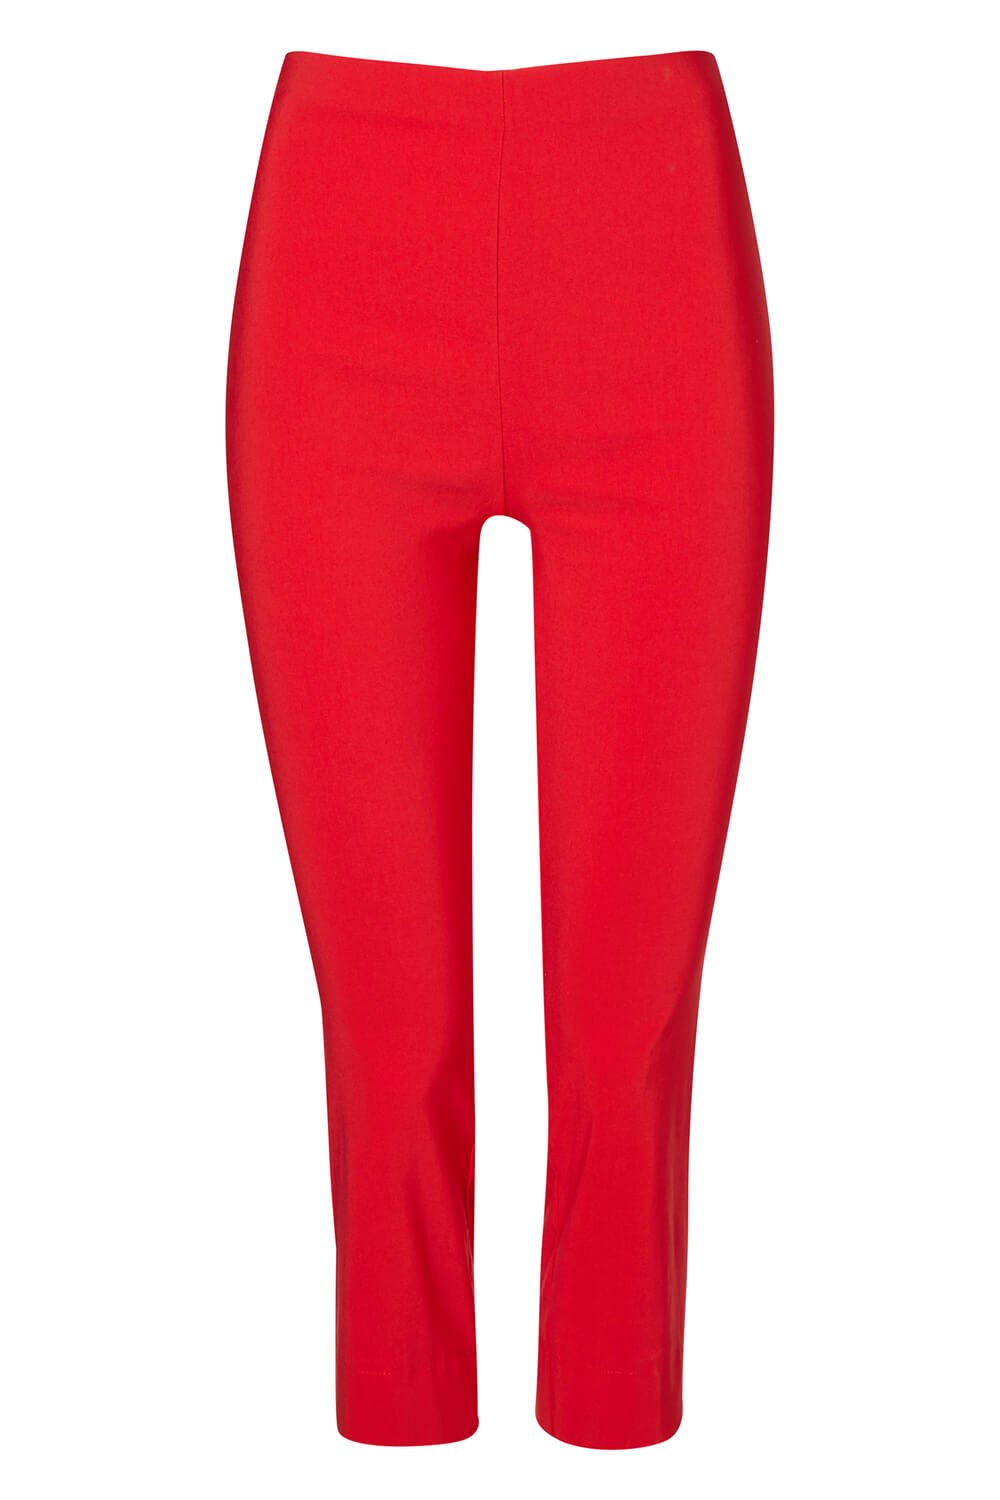 Curve Cropped Stretch Trouser in Red - Roman Originals UK